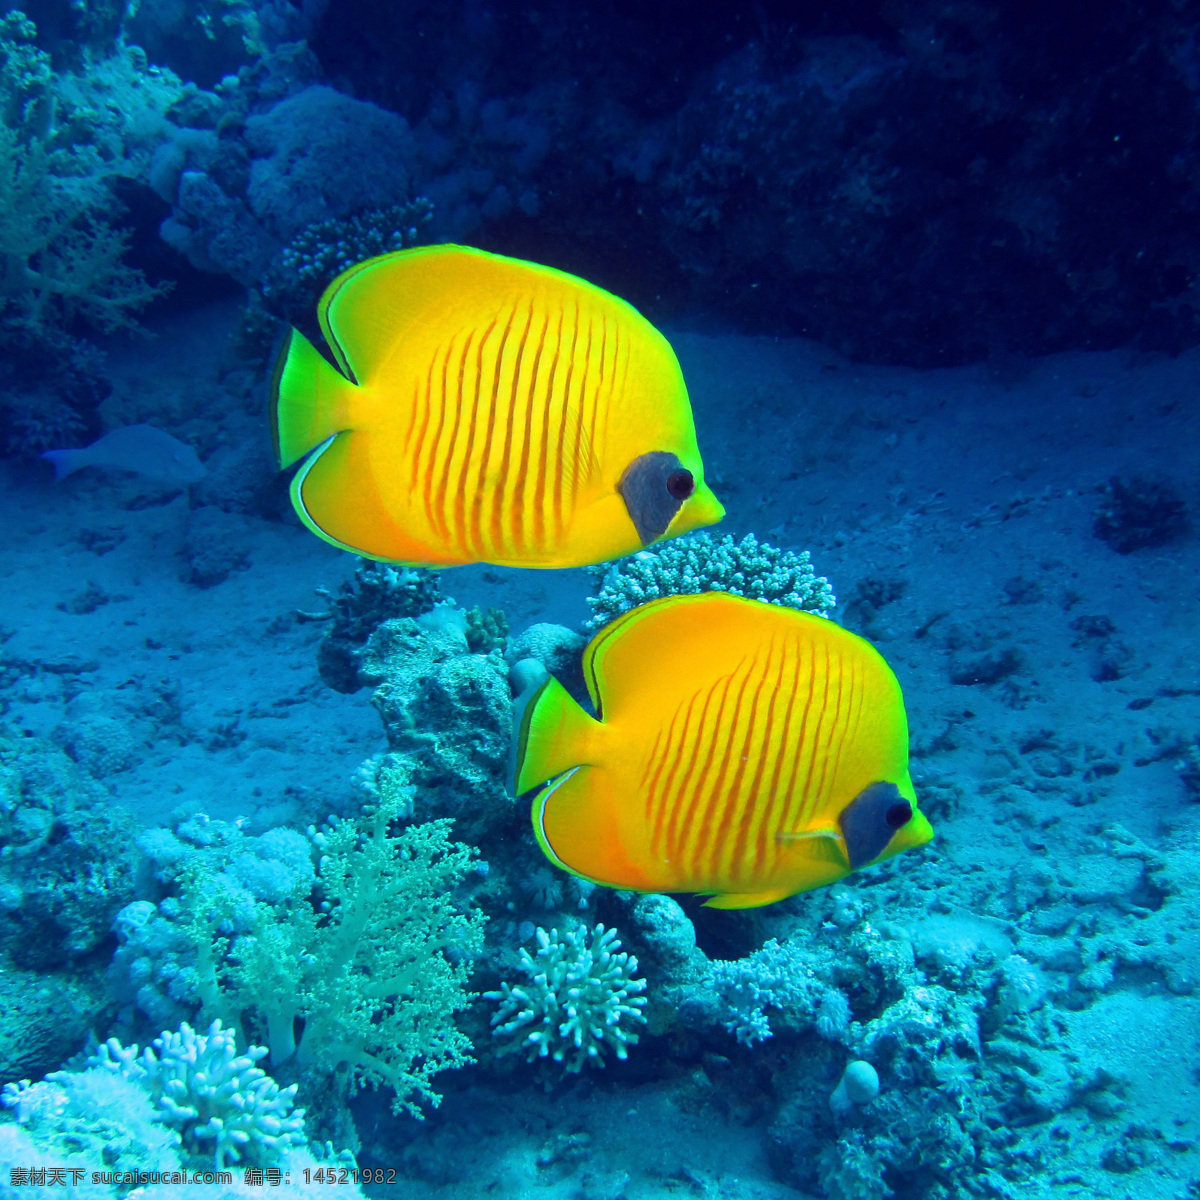 海底 水中 鱼 鱼类动物 海底生物 水中生物 海洋生物 海洋动物 动物世界 生物世界